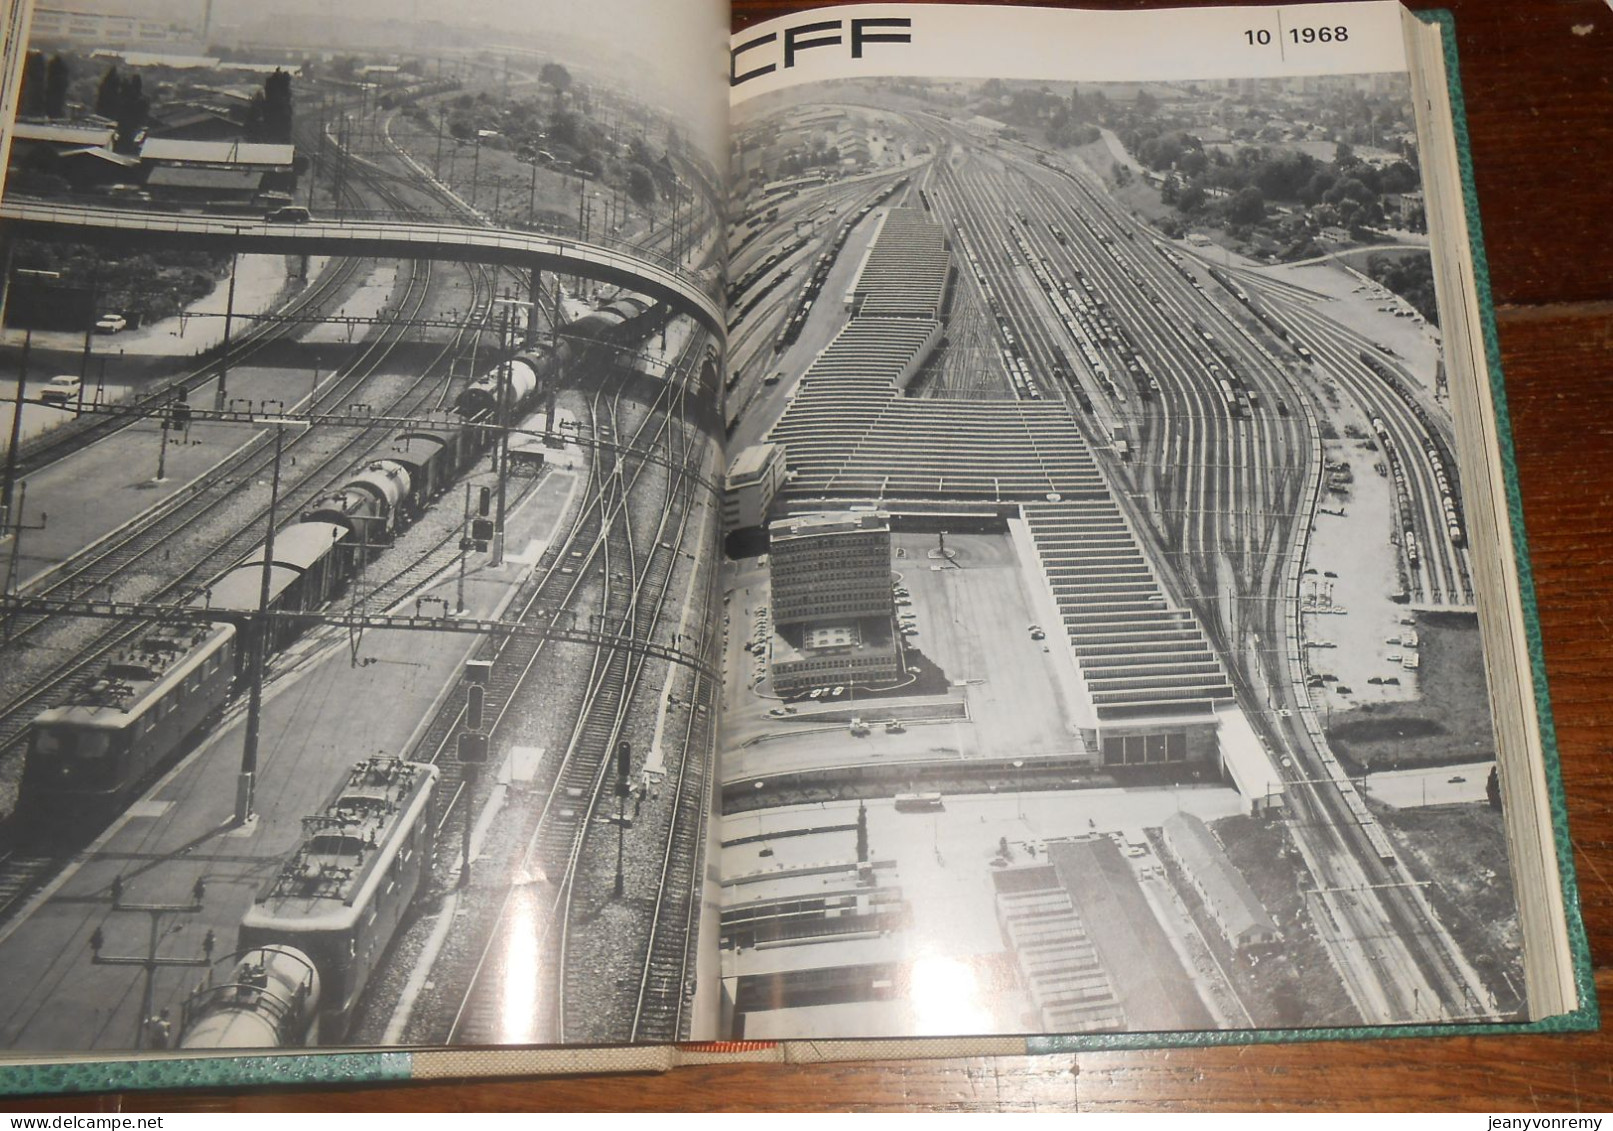 CFF. 24 revues reliées.1/1968 à 12/1969.